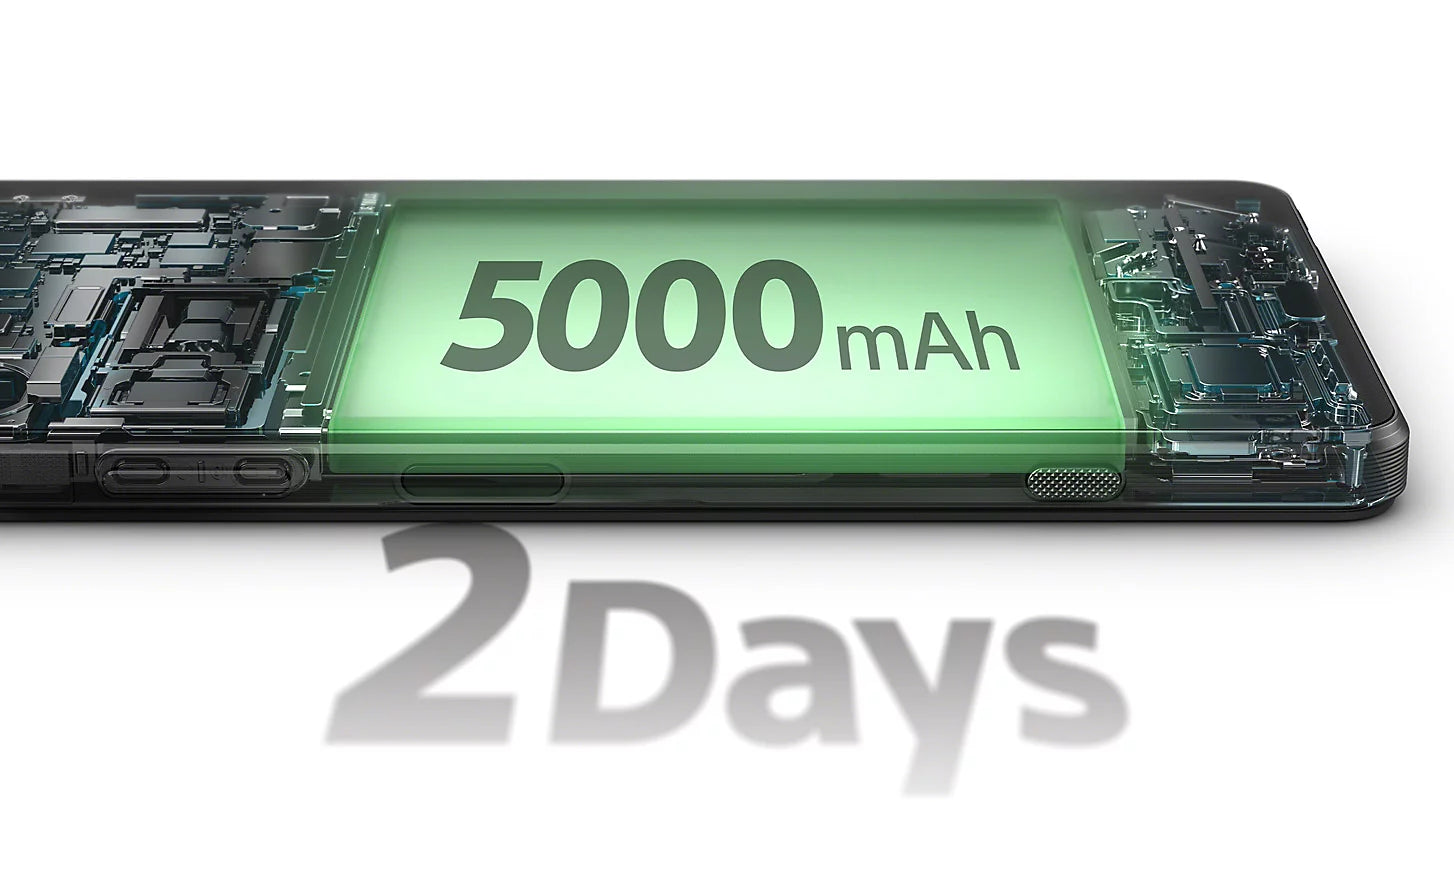 Sony Xperia 1 VI 5G (256GB/512GB)